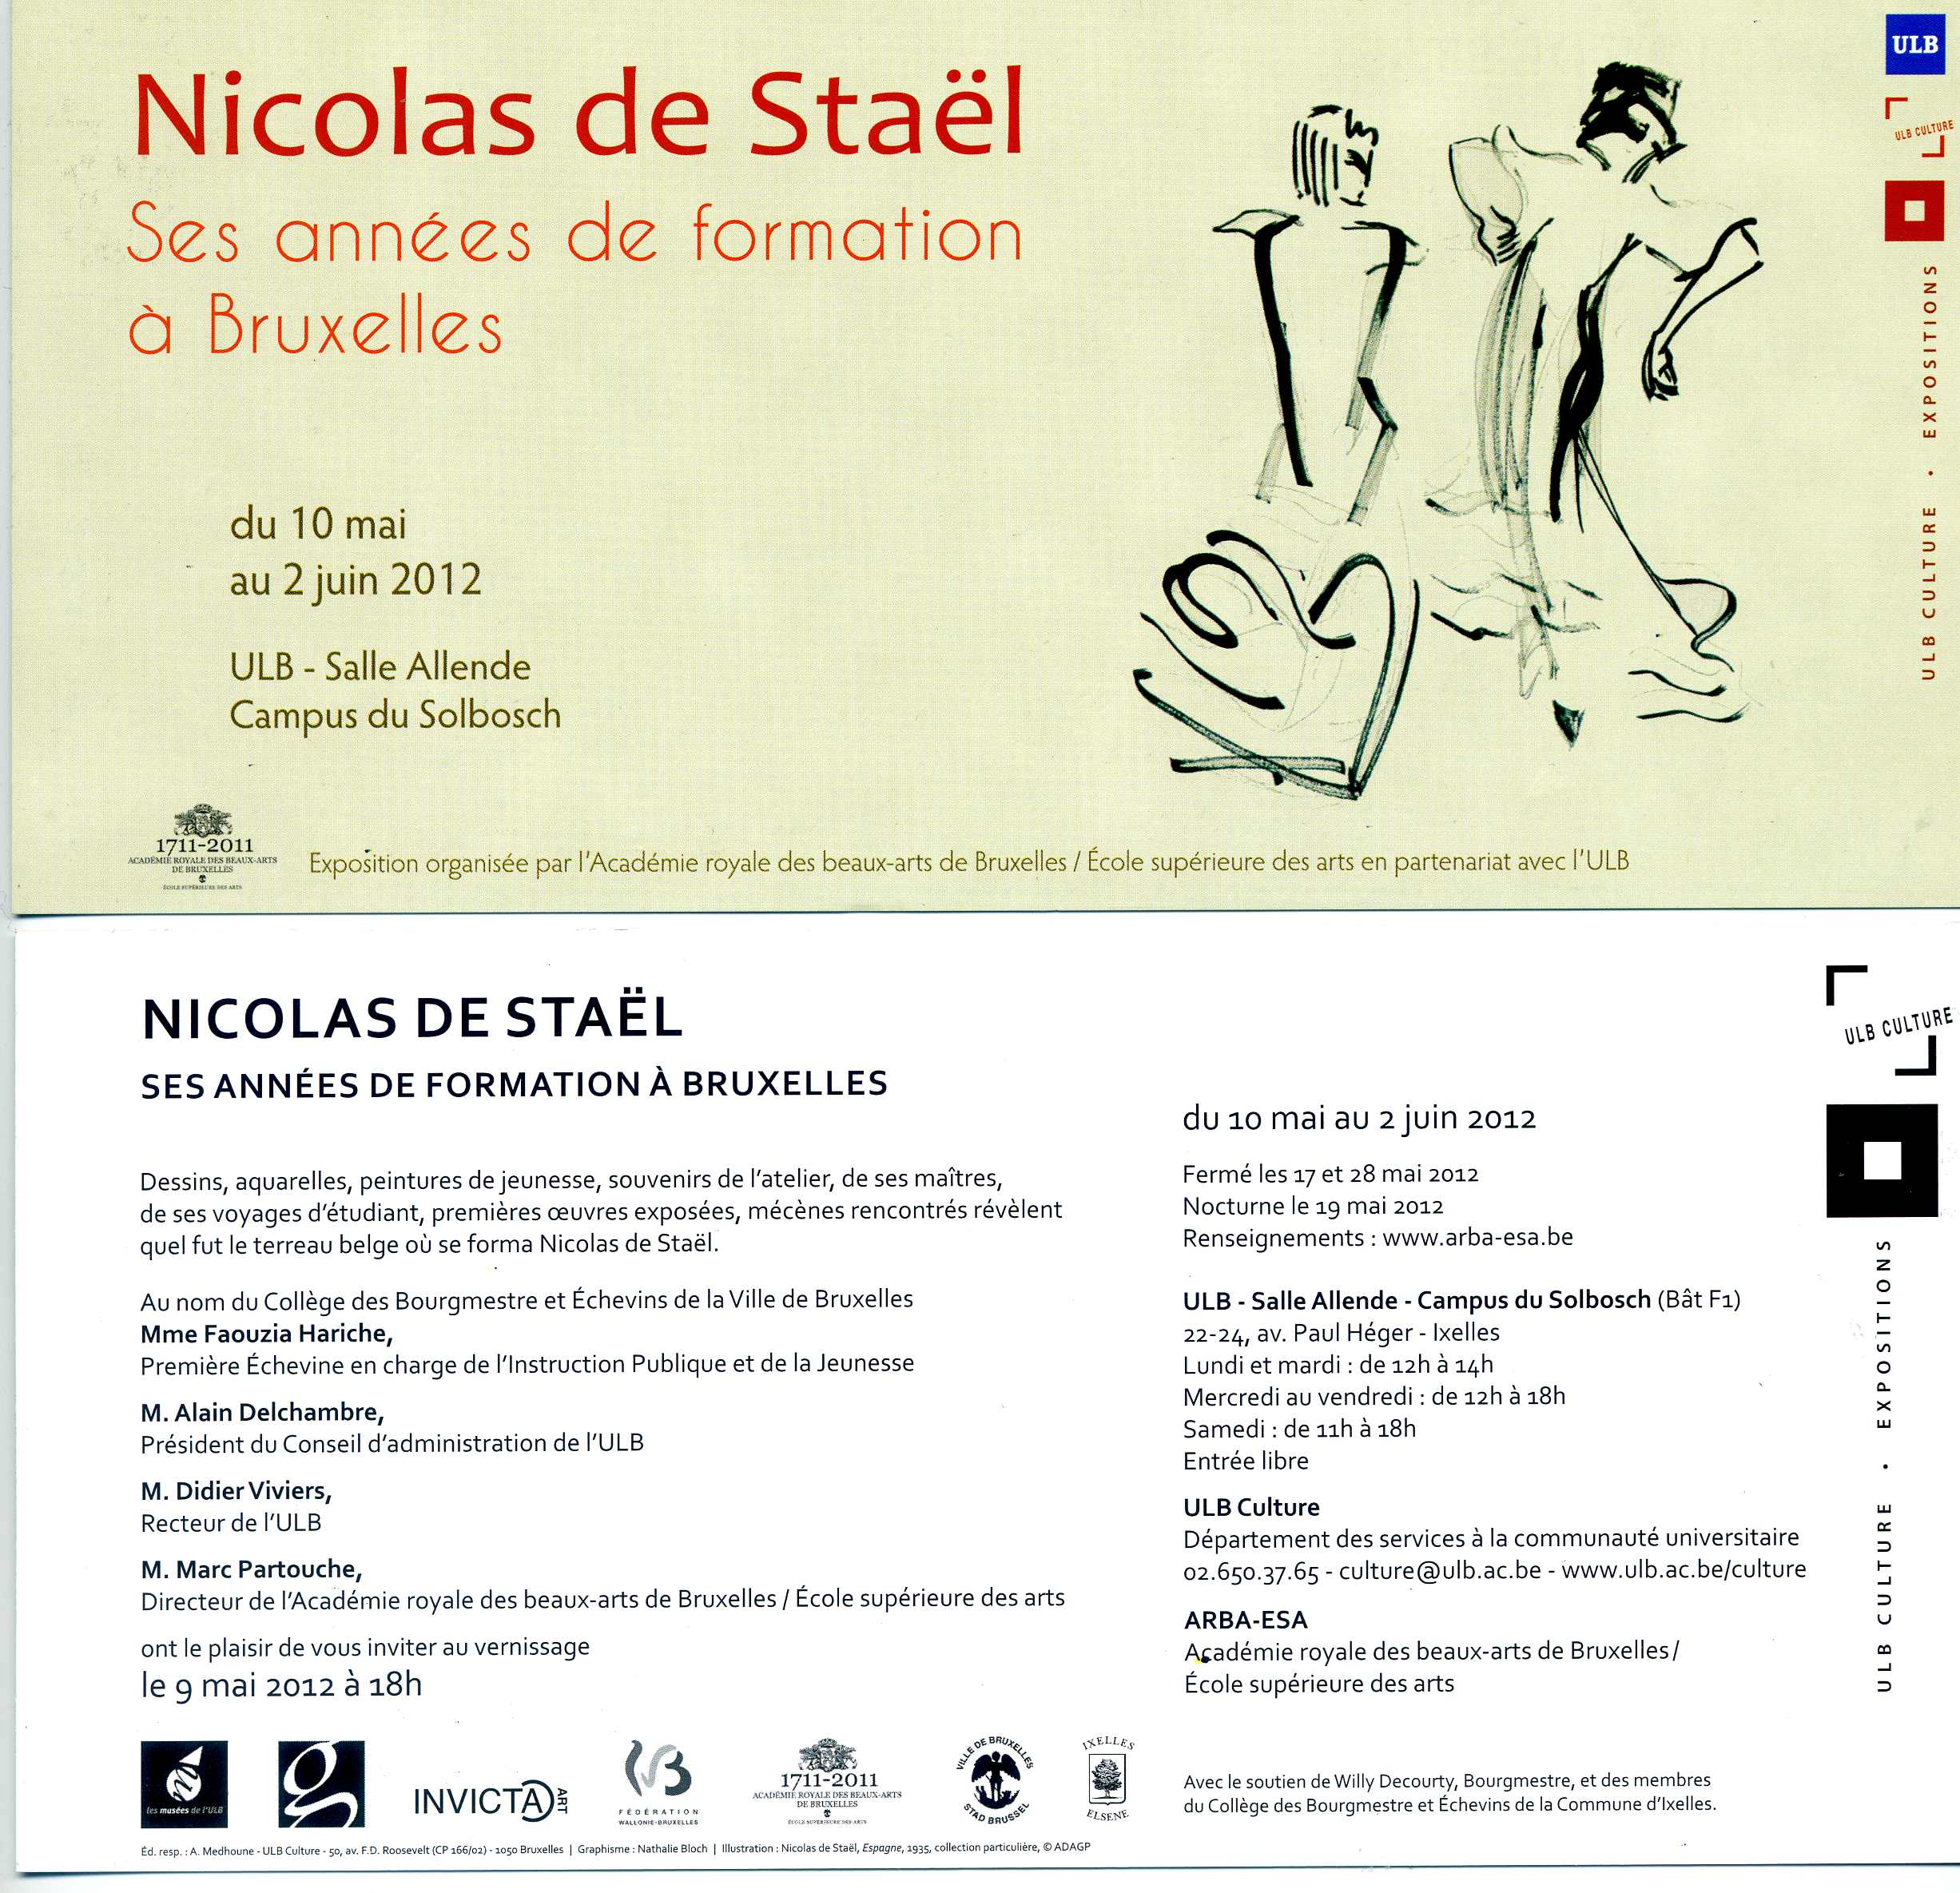 Vernissage exposition : Nicolas de Staël - Ses années de formation à Bruxelles. Николай В. Шталь фон Гольштейн) - учебные года в Брюсселе.